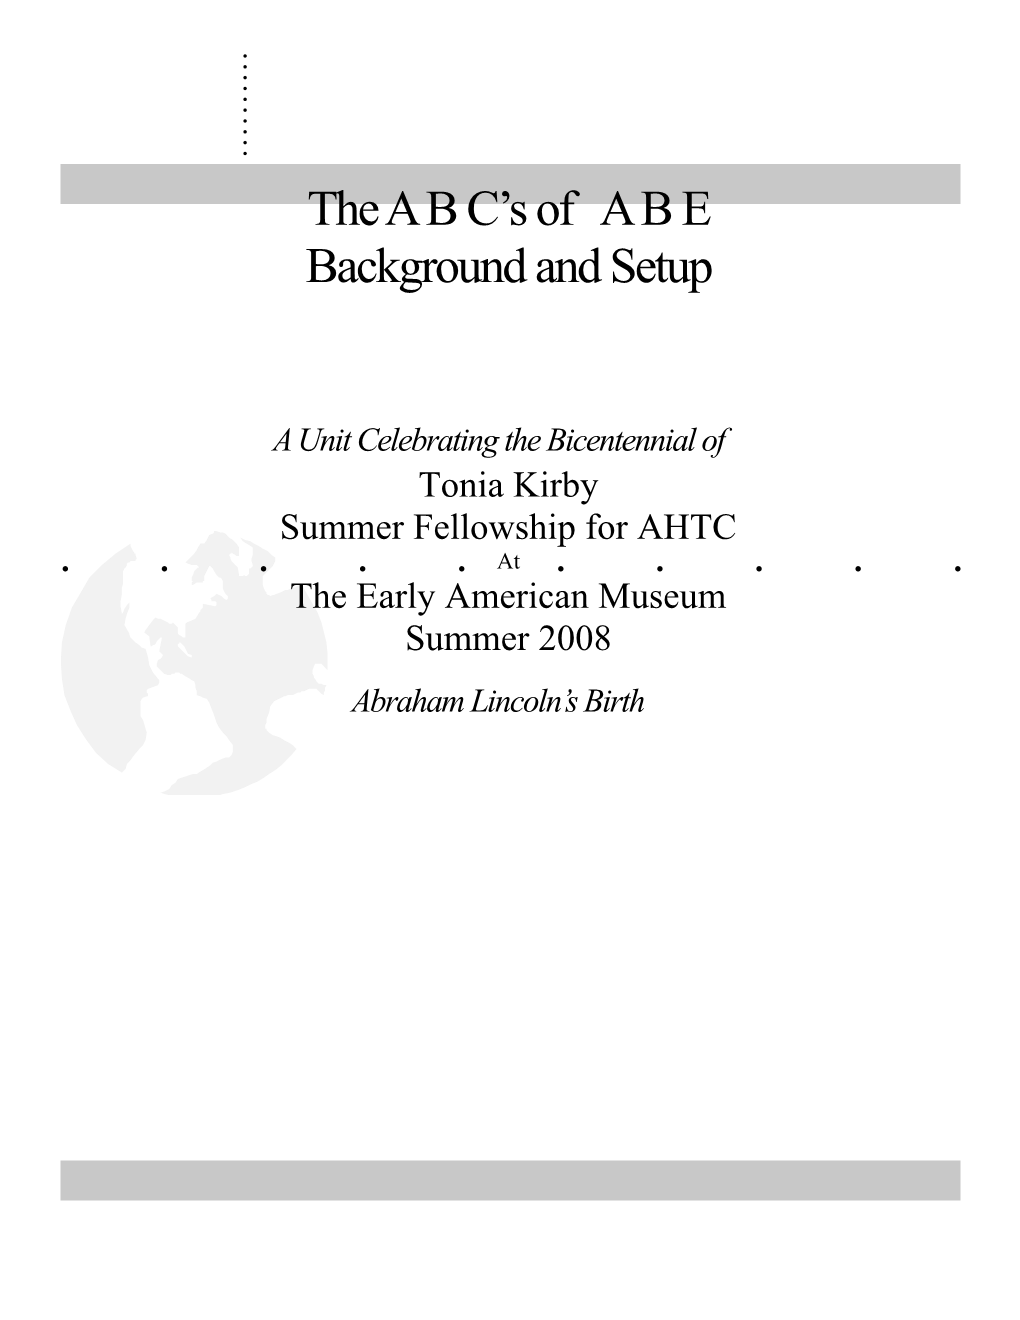 Summer Fellowship for AHTC